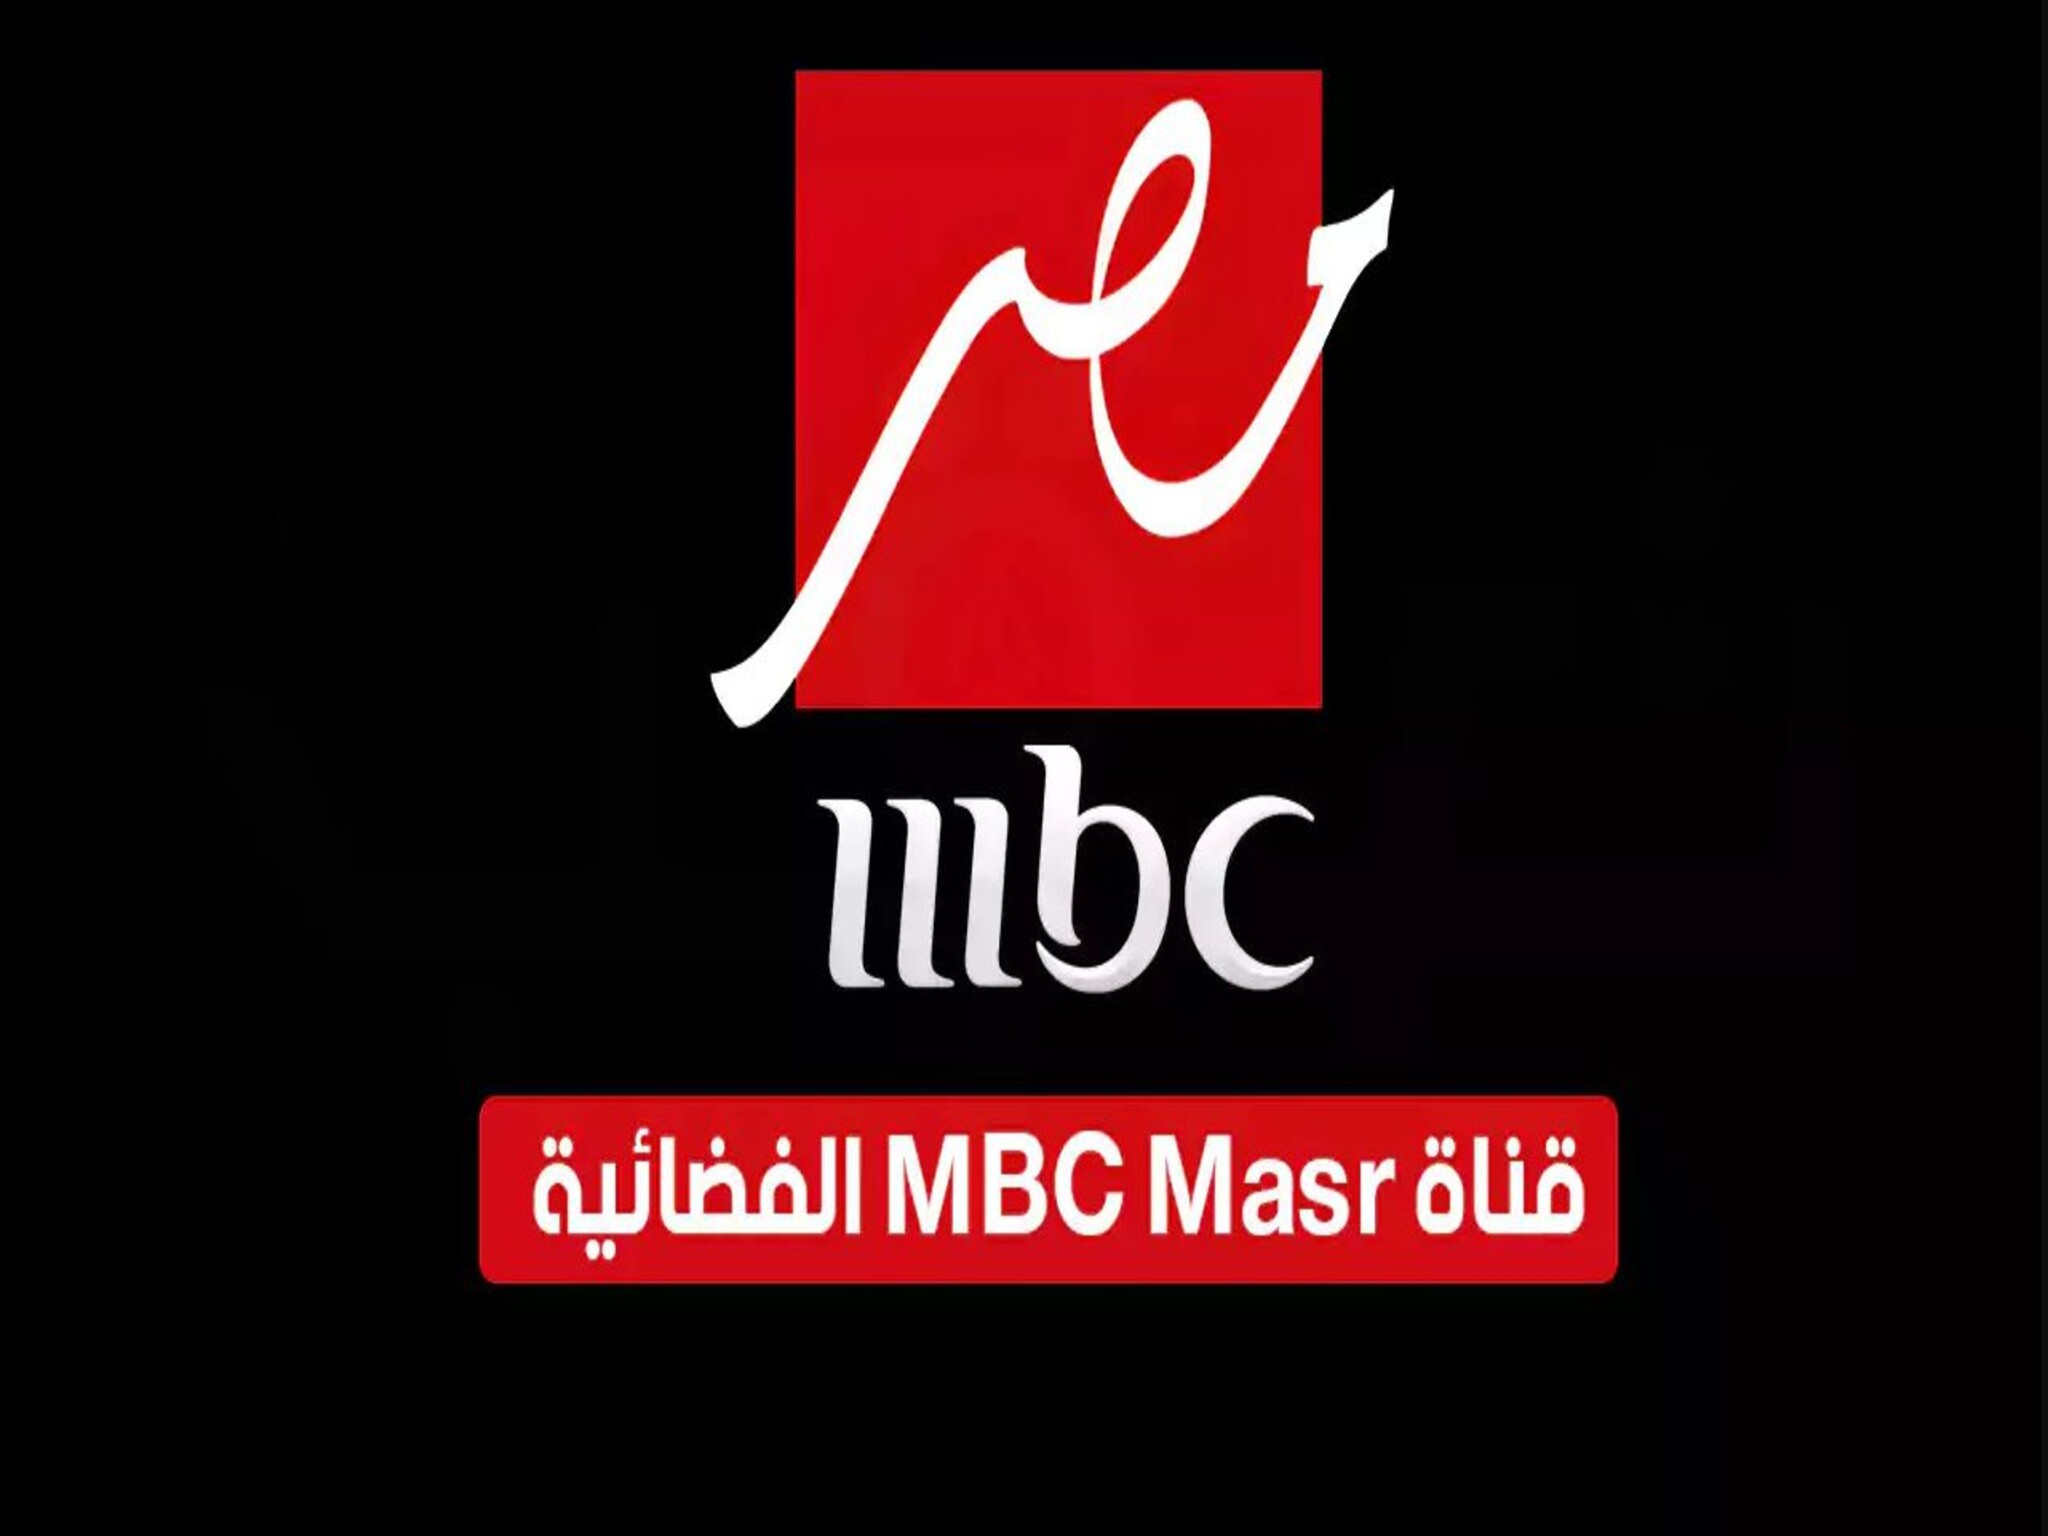  استقبل تردد قناة MBC مصر 2024 على الأقمار الصناعية...قناة الأسرة المصرية